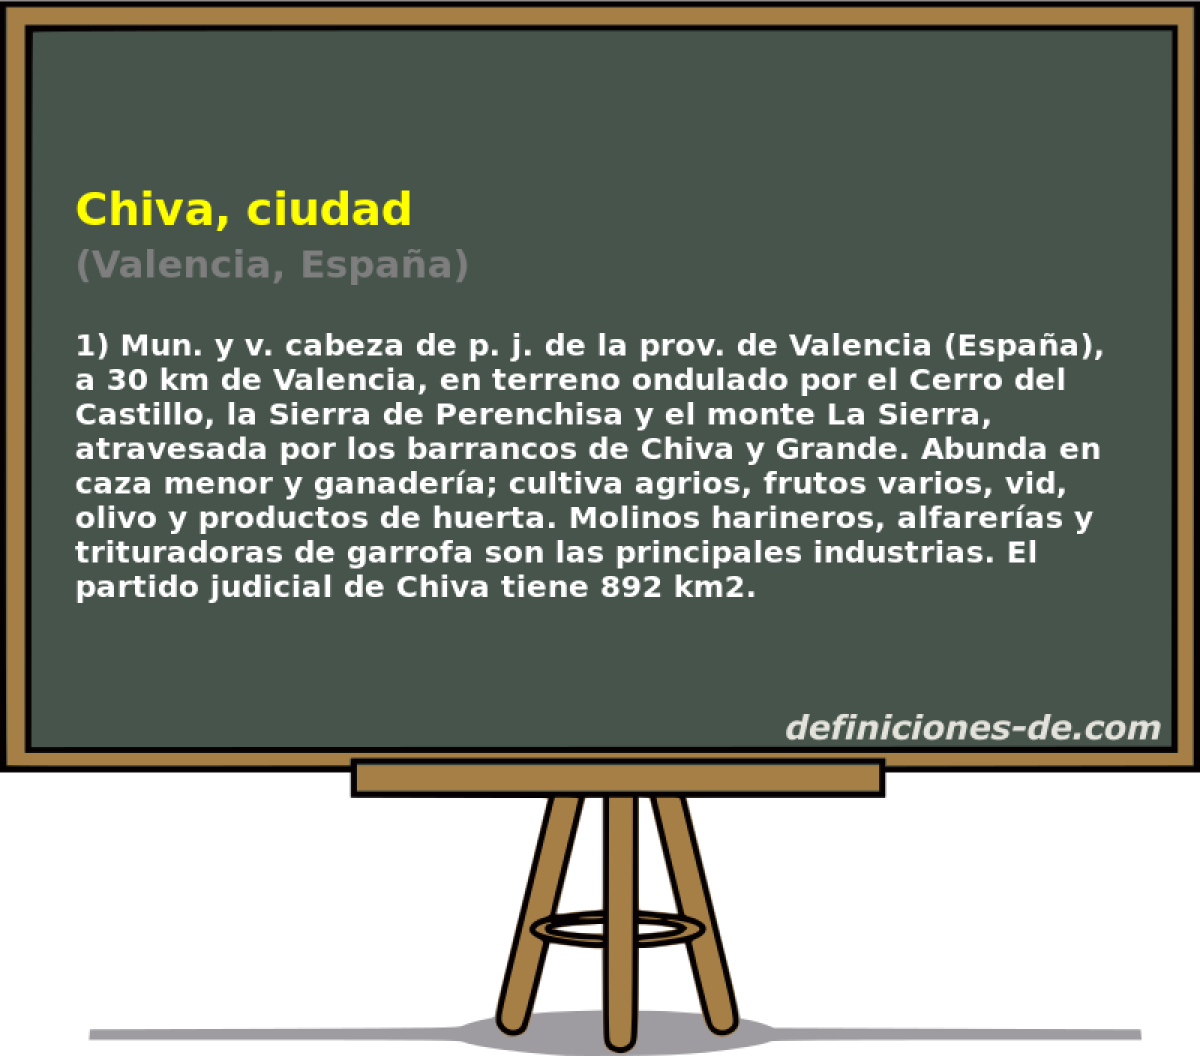 Chiva, ciudad (Valencia, Espaa)